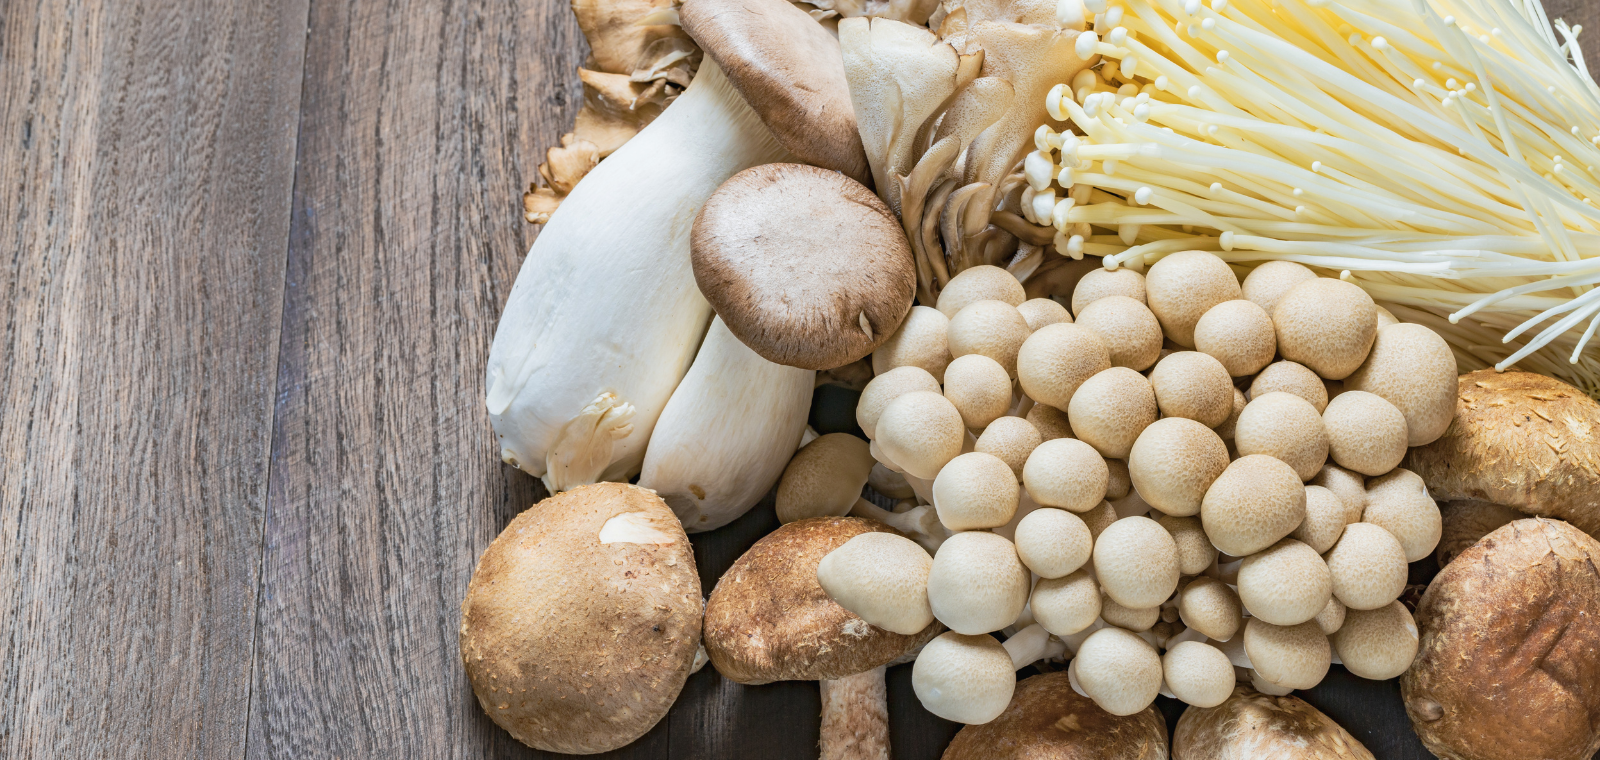 Zdrave Gljive - Kako pojedine vrste gljiva utječu na naše zdravlje?